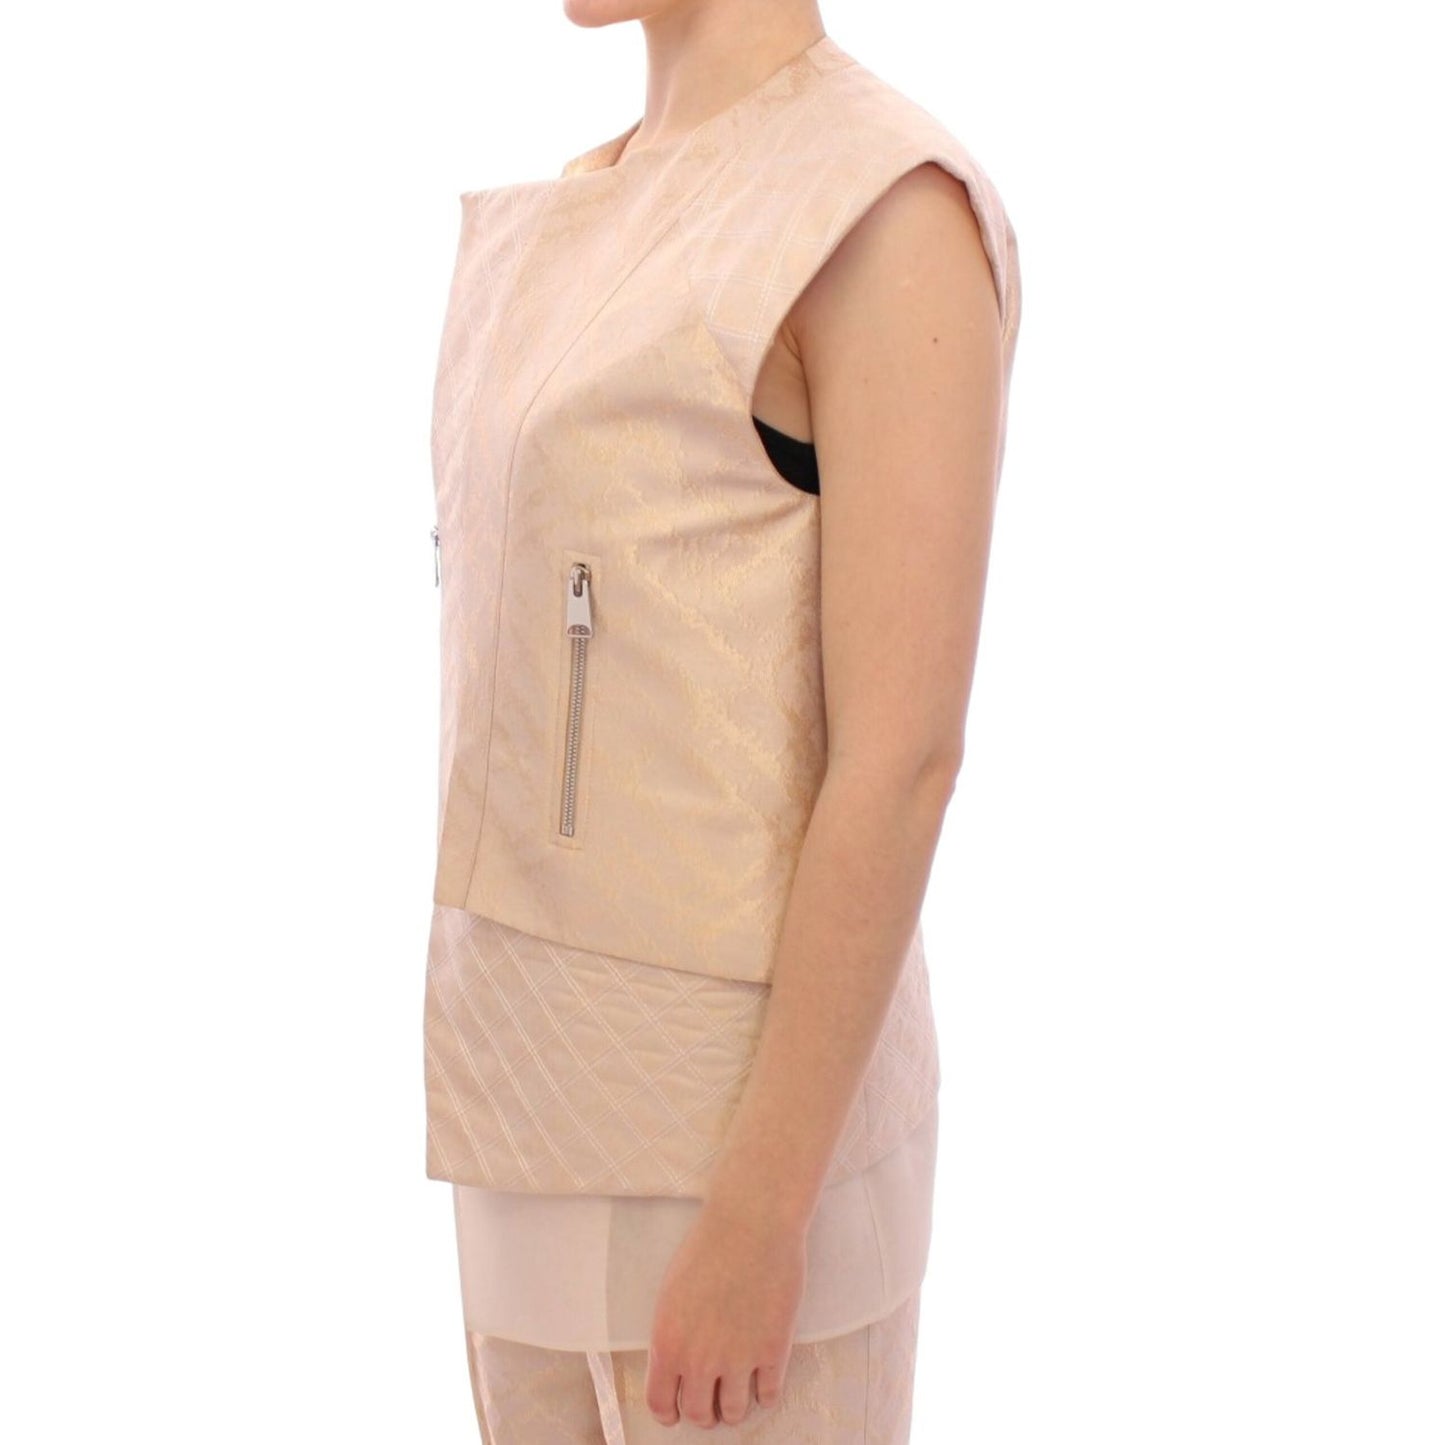 Zeyneptosun | Exquisite Beige Brocade Sleeveless Jacket Vest| McRichard Designer Brands   